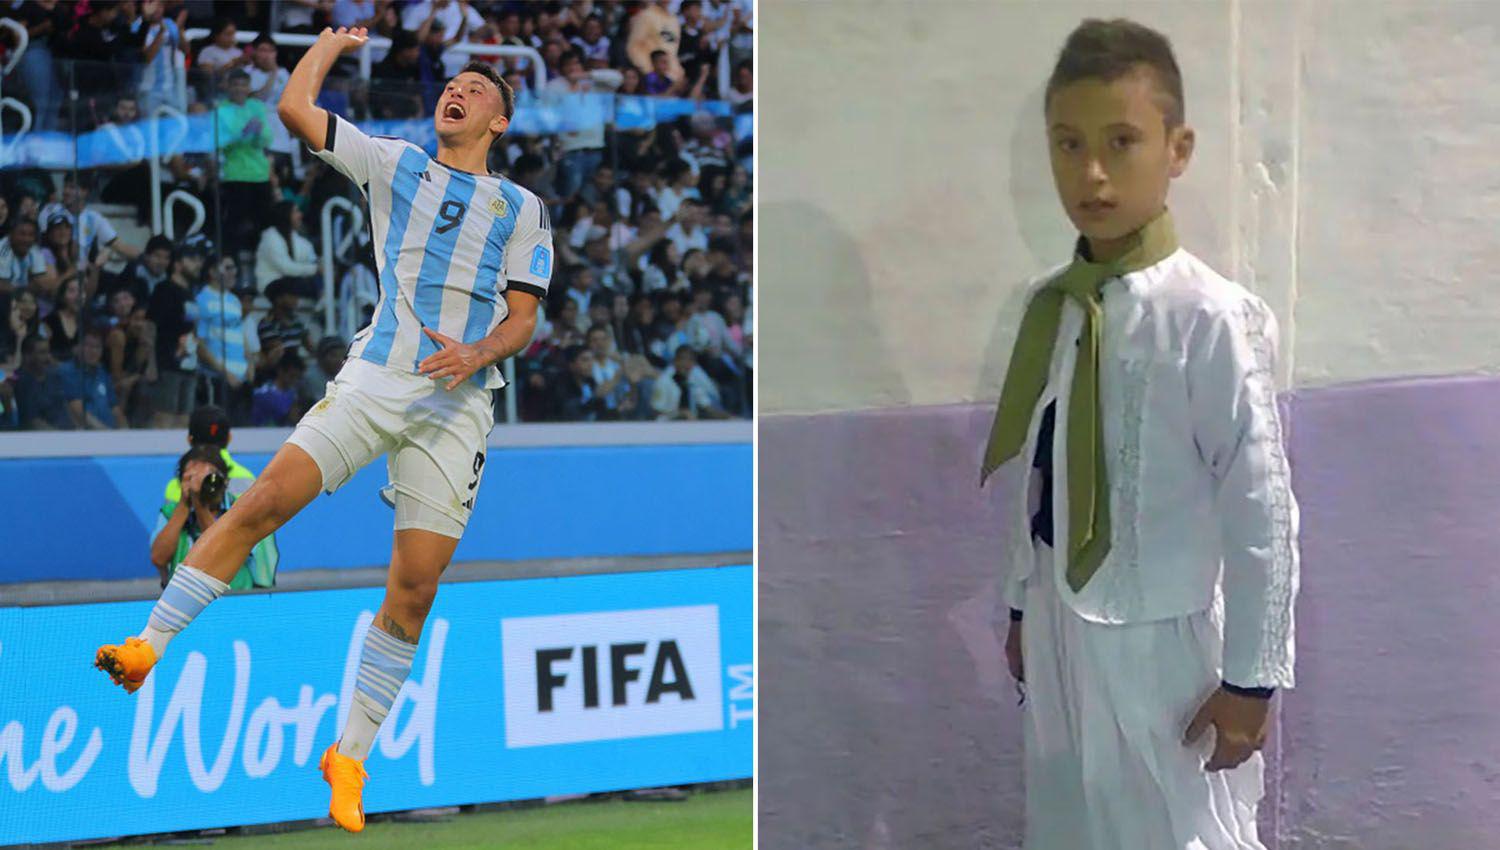 La historia detraacutes del festejo bailando malambo de Alejo Veacuteliz el goleador de la Argentina